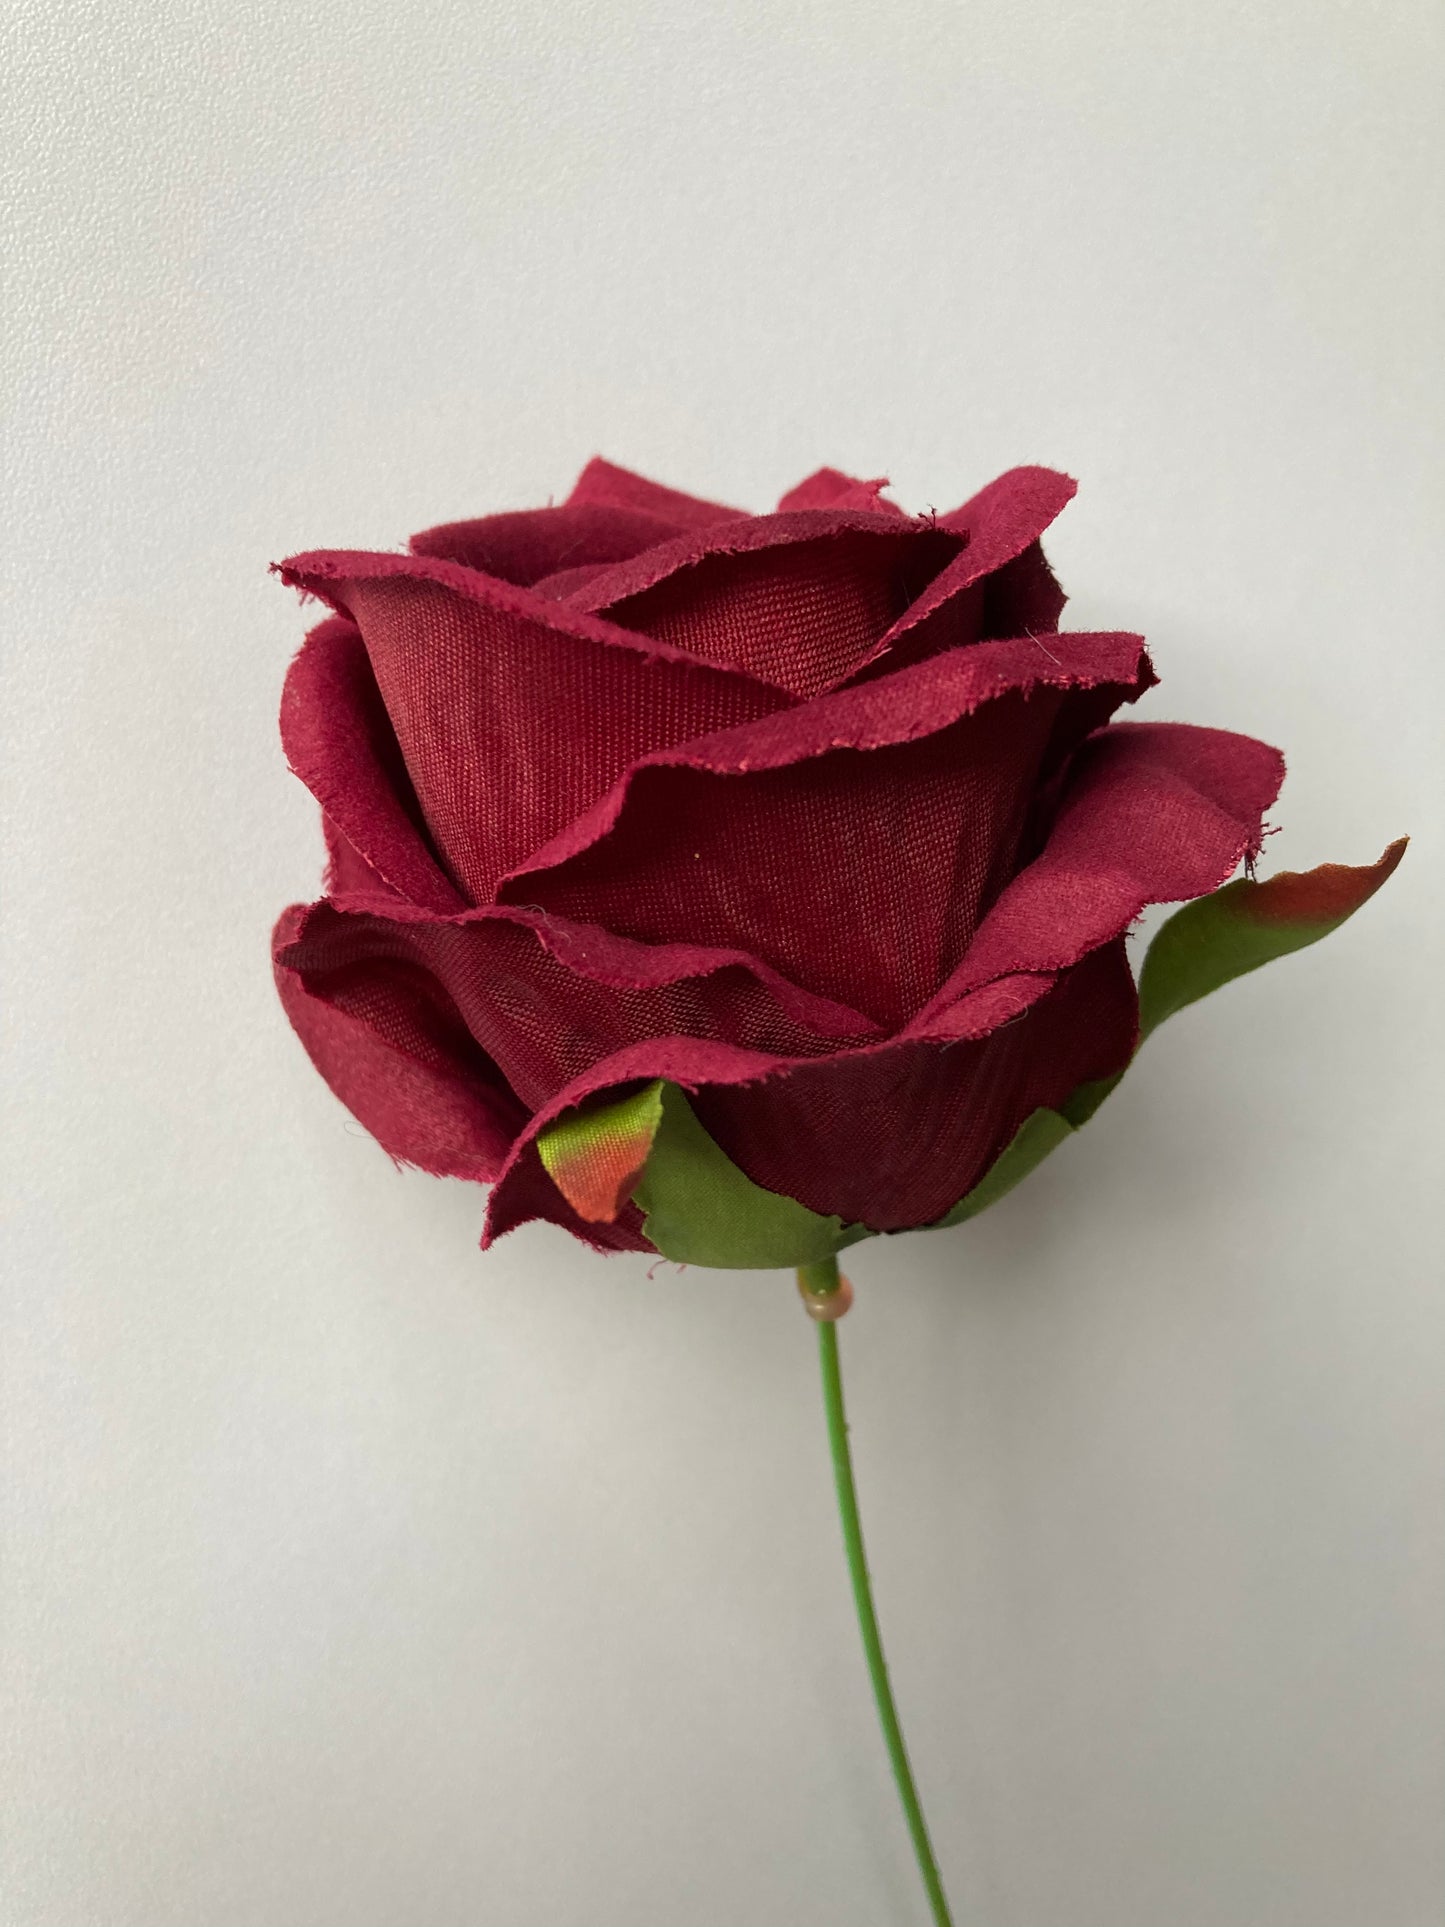 Burgundy Rose Stem